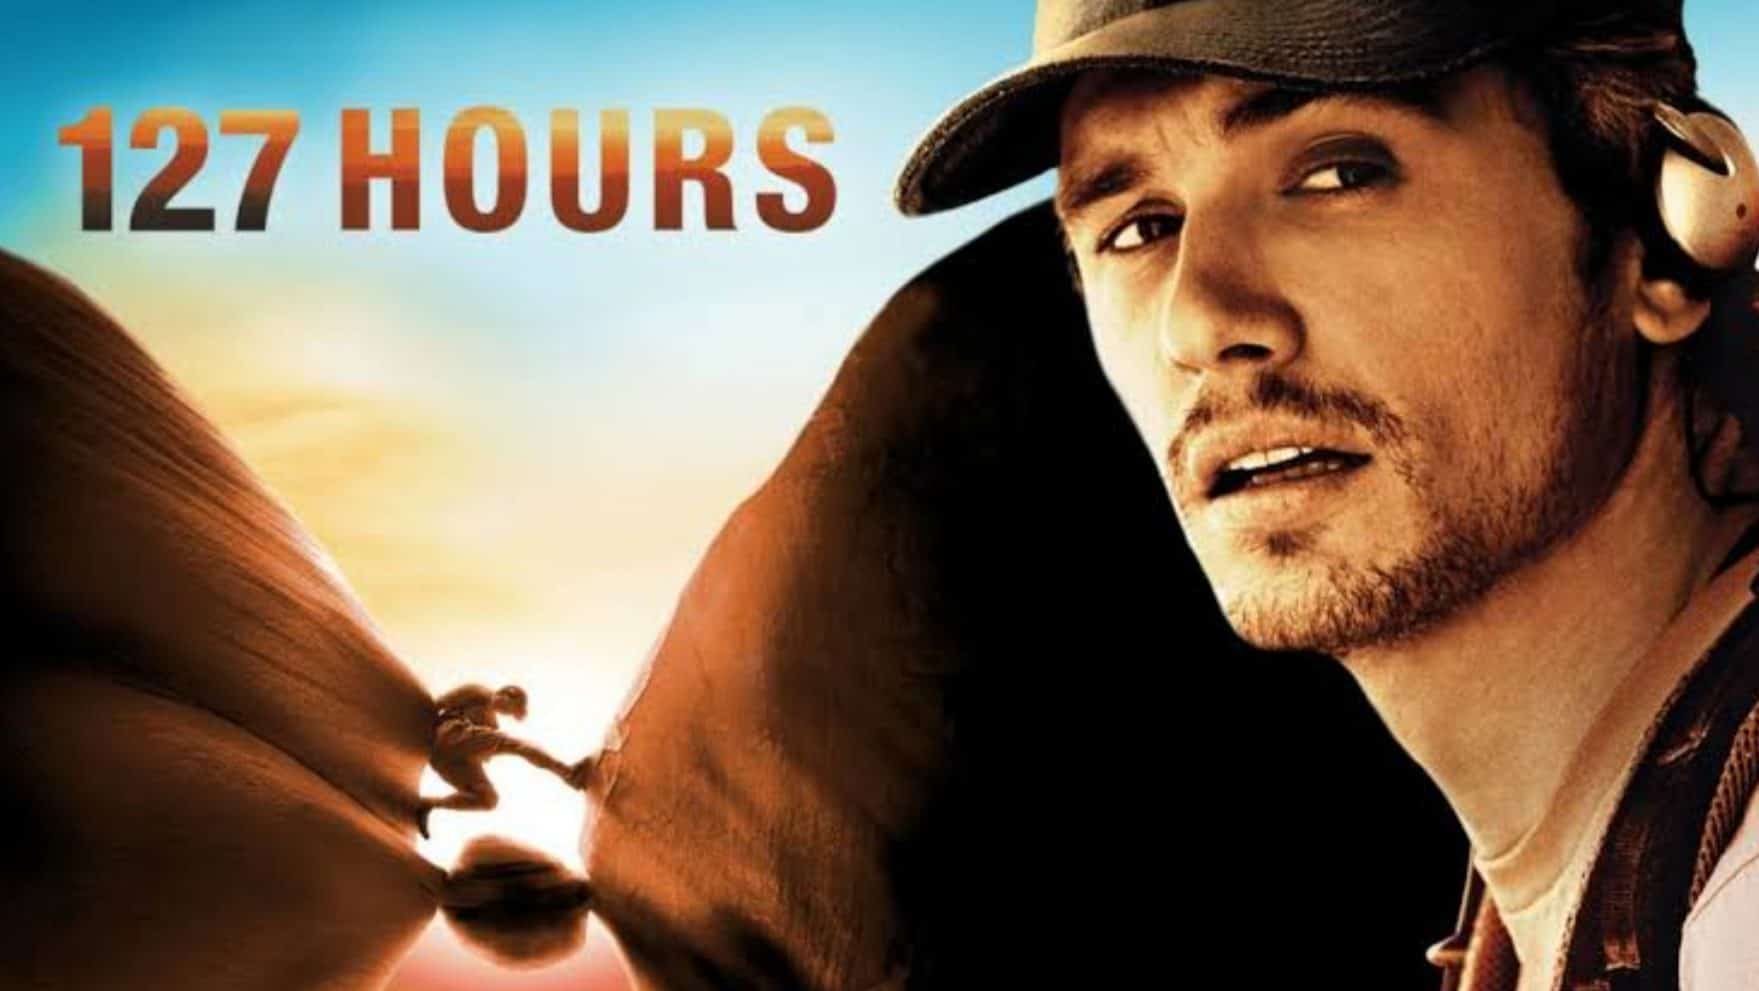 127 Hours Best Adventure Movie To Watch